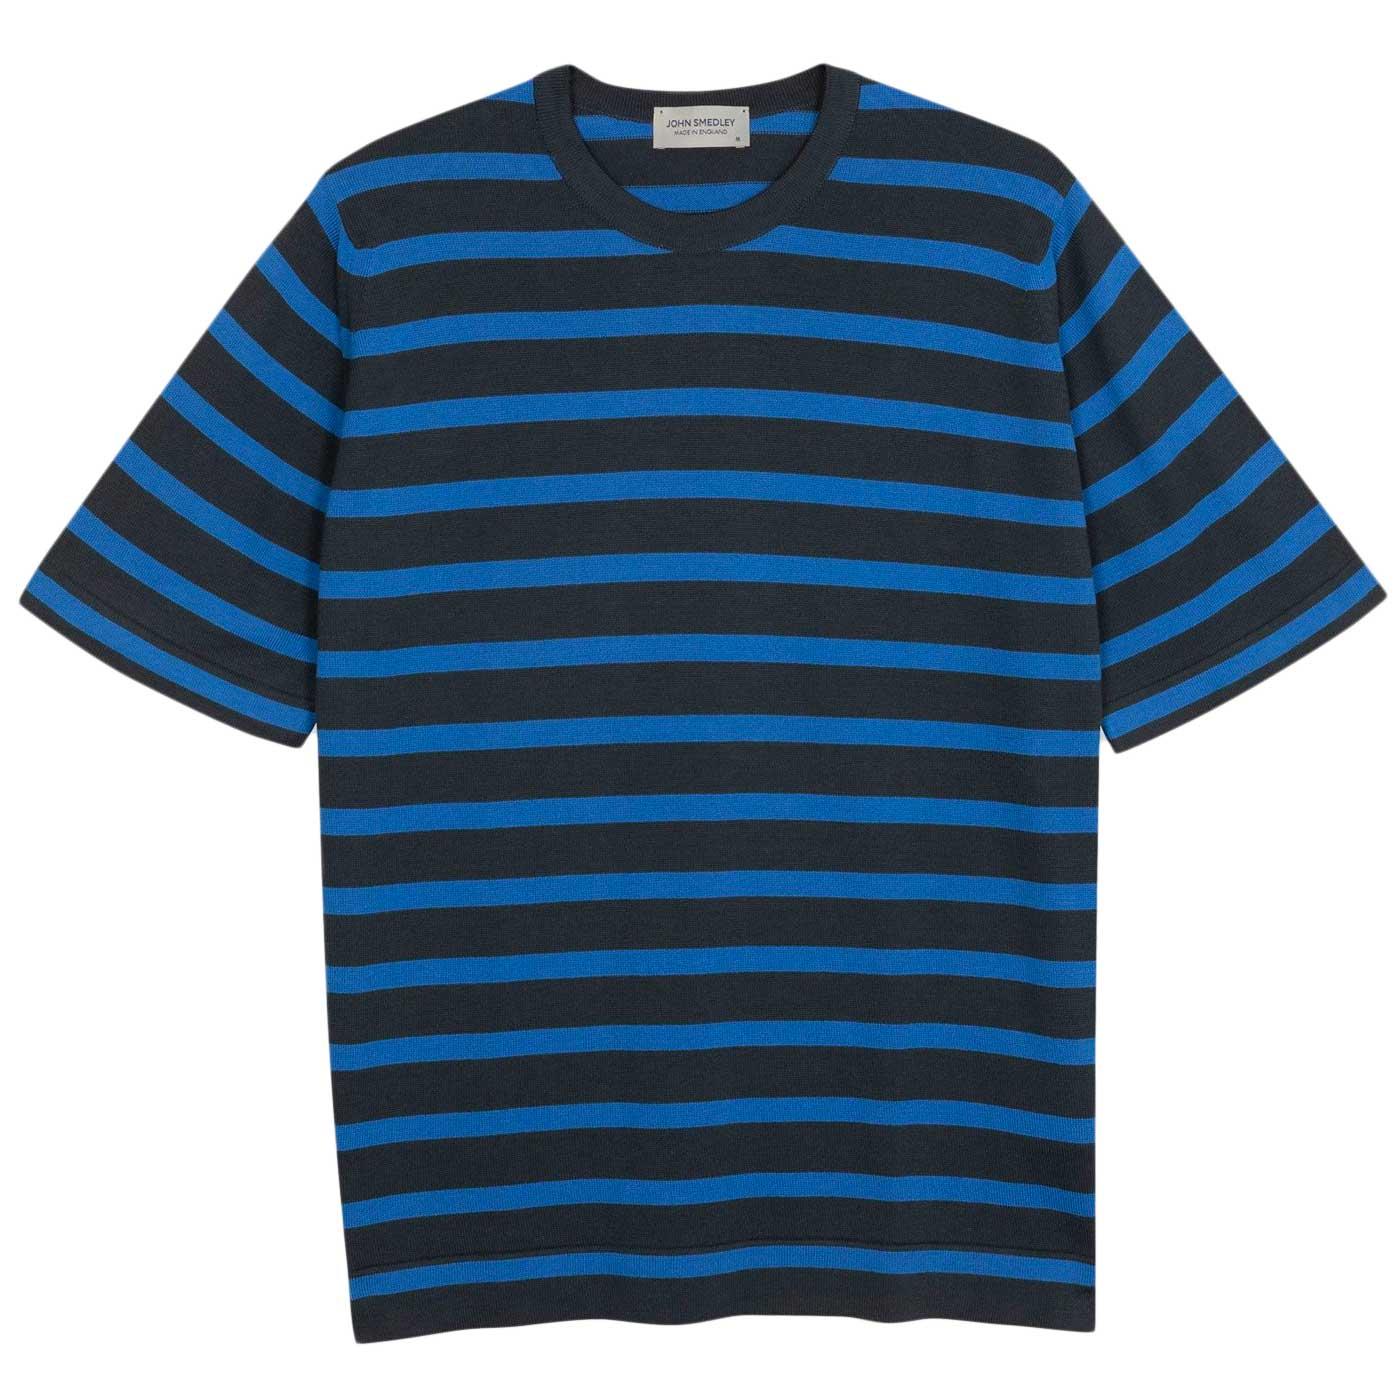 Allan John Smedley Breton Stripe Welt T-shirt G/EB